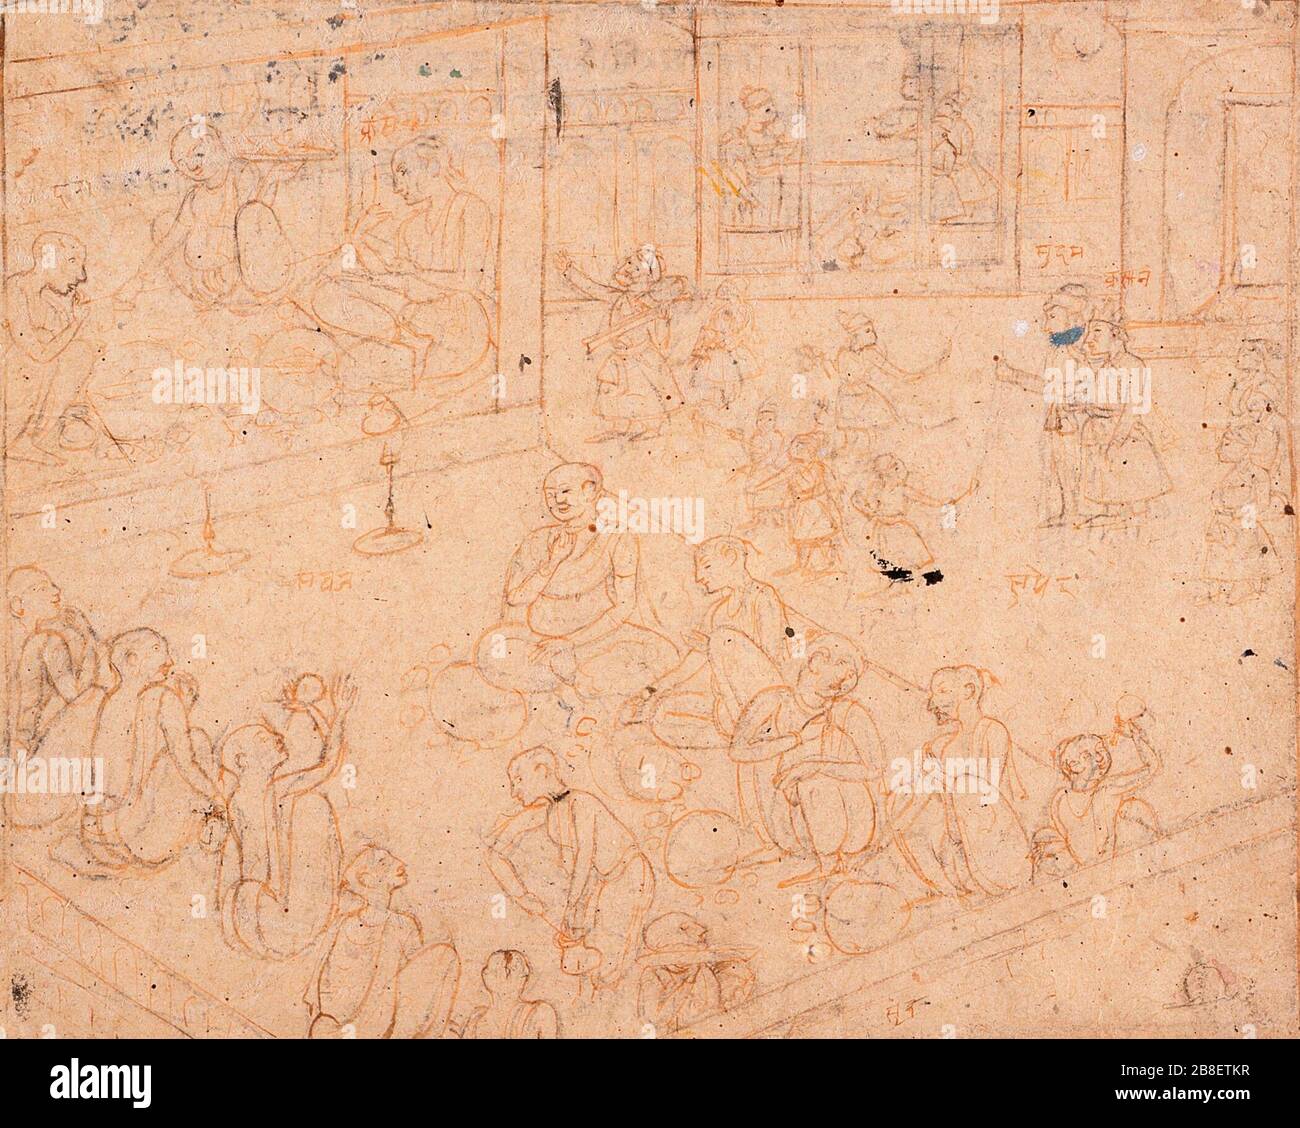 "Fiesta para los brahmanes; en Inglés: India, Himachal Pradesh, Kangra, 1780-1800 dibujos de tinta y acuarela sobre papel opaco Imagen: 8 1/4 x 10 1/8 pulg. (20,95 x 25,72 cm); Hoja: 9 3/4 x 12 pulg. (24.76 x 30.48 cm) de Regalo de Paul F. Walter (M.75.113.5) al sur y sureste asiáticos arte; entre 1780 y 1800 fecha QS:P571,+1500-00-00T00:00:00Z/6,P1319,+1780-00-00T00:00:00Z/9,P1326,+1800-00-00T00:00:00Z/9; ' Foto de stock